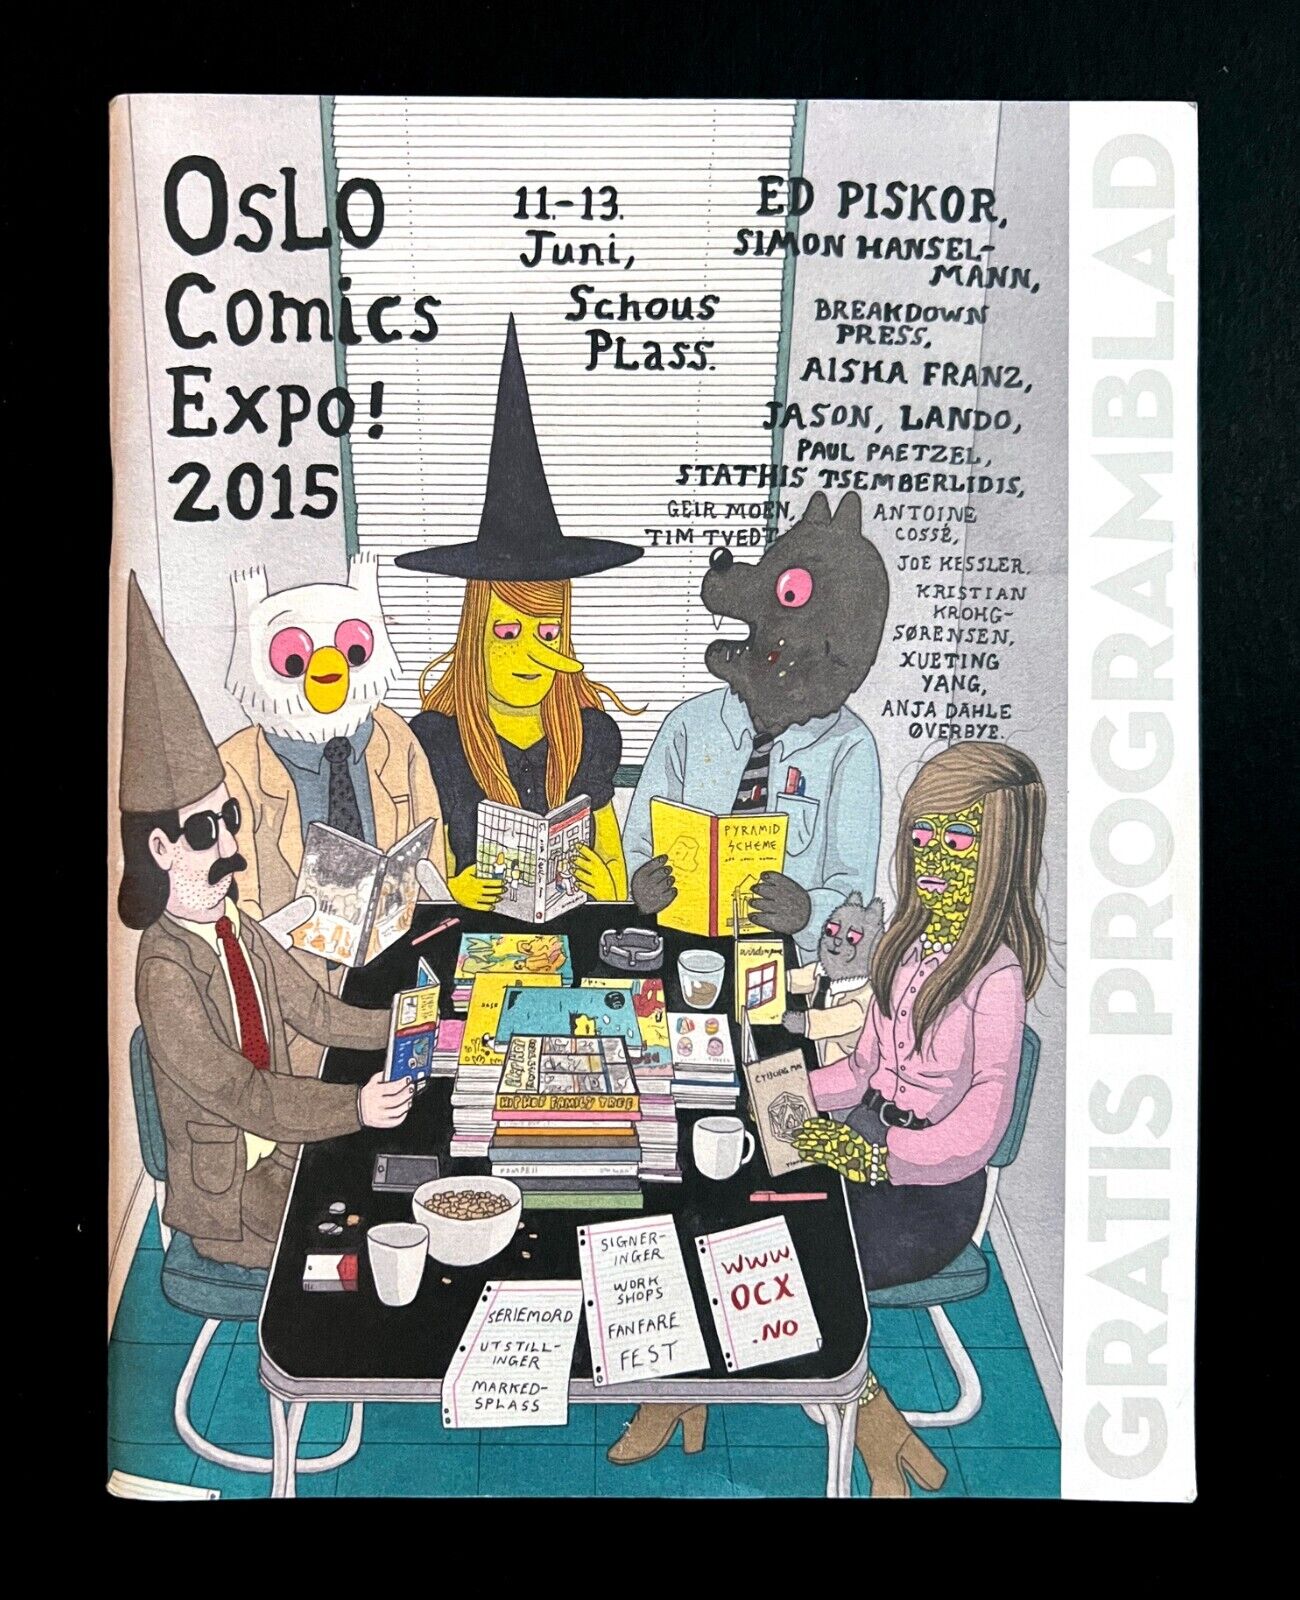 OSLO COMICS EXPO 2015 PROGRAM RARE Simon Hanselmann Cover & Interior Ed Piskor